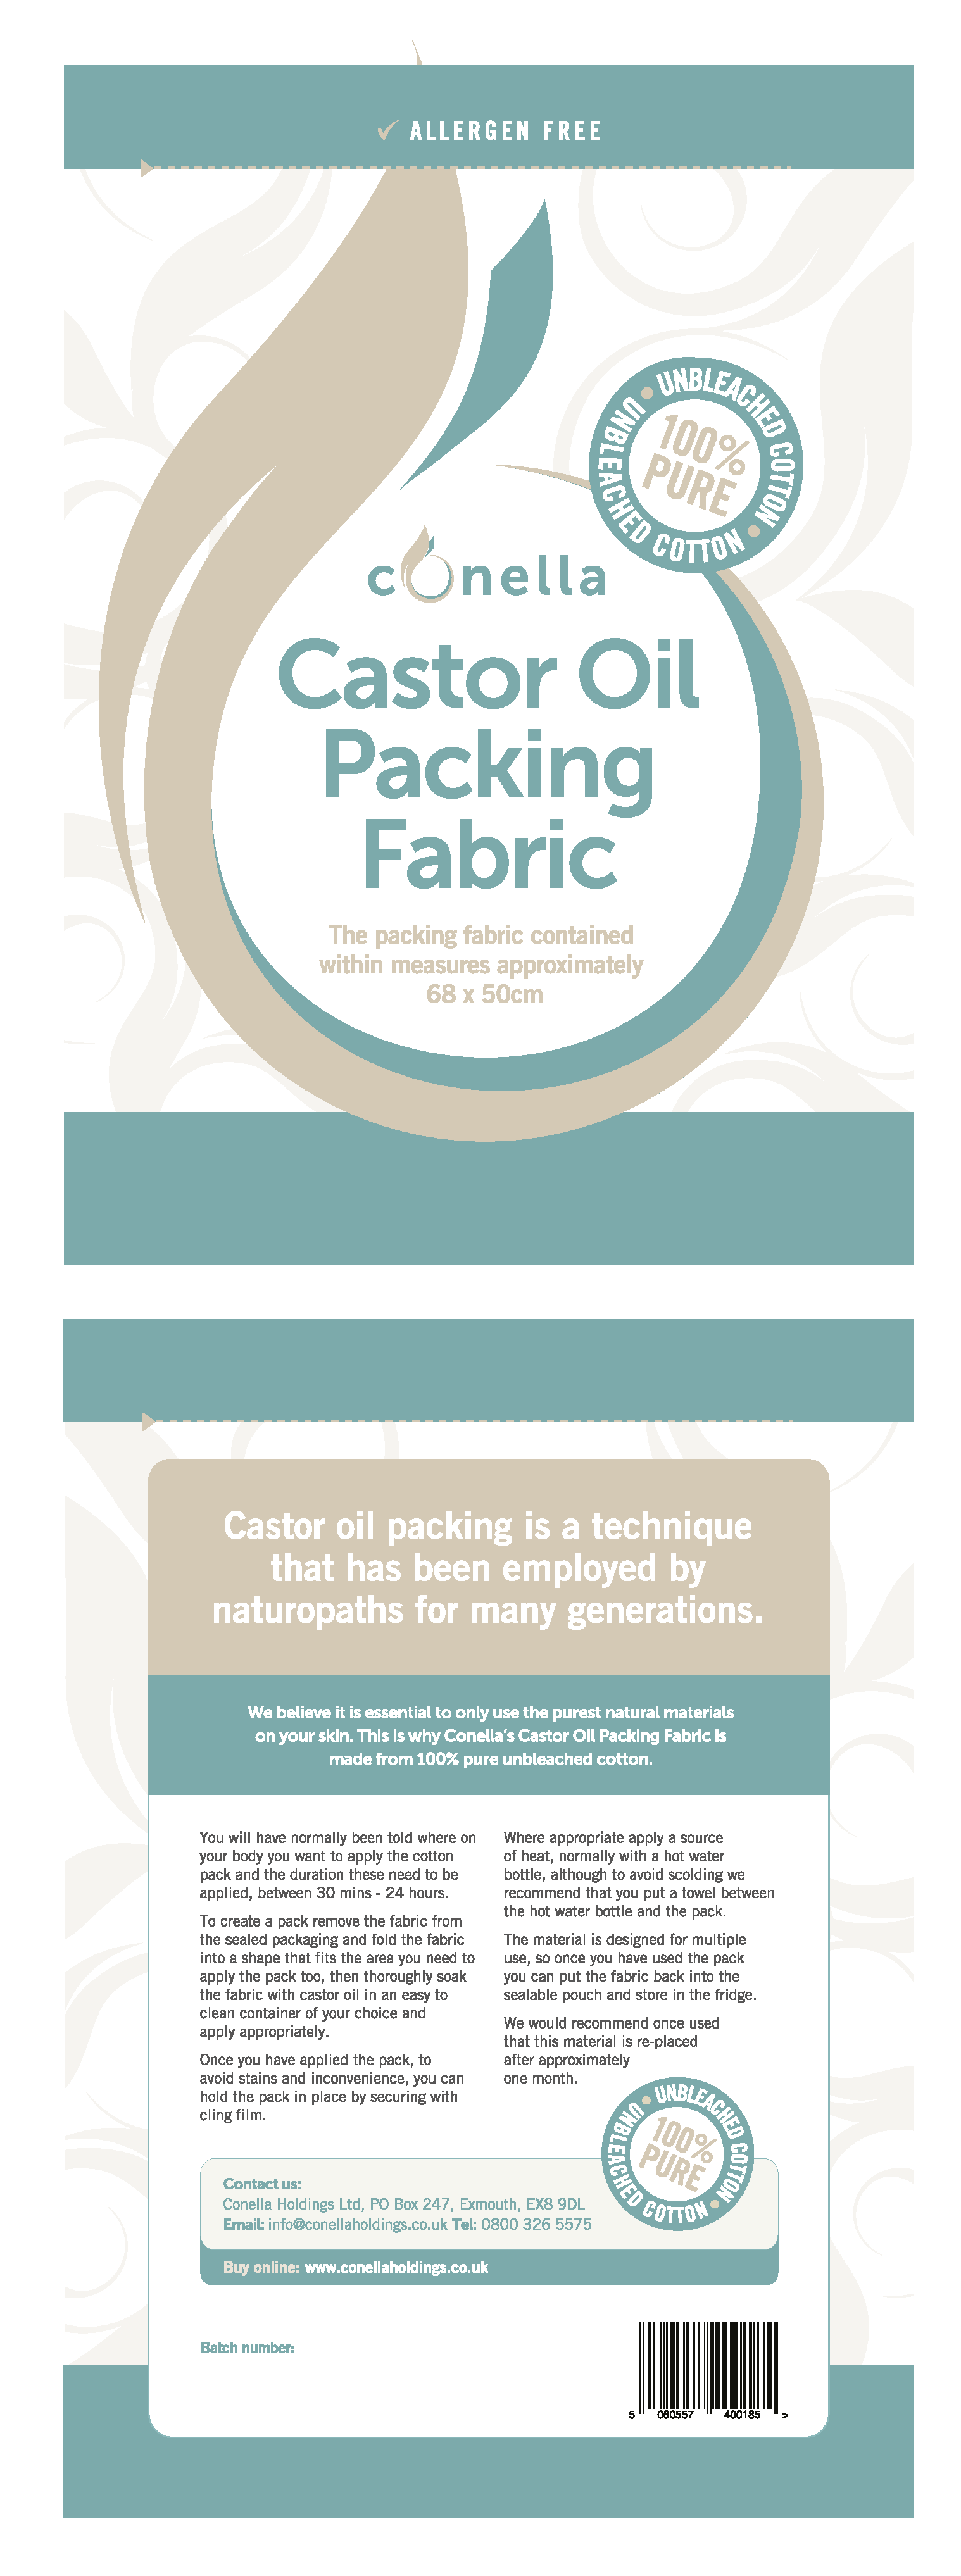 Conella Castor Oil Packing Fabric 68 x 50cm